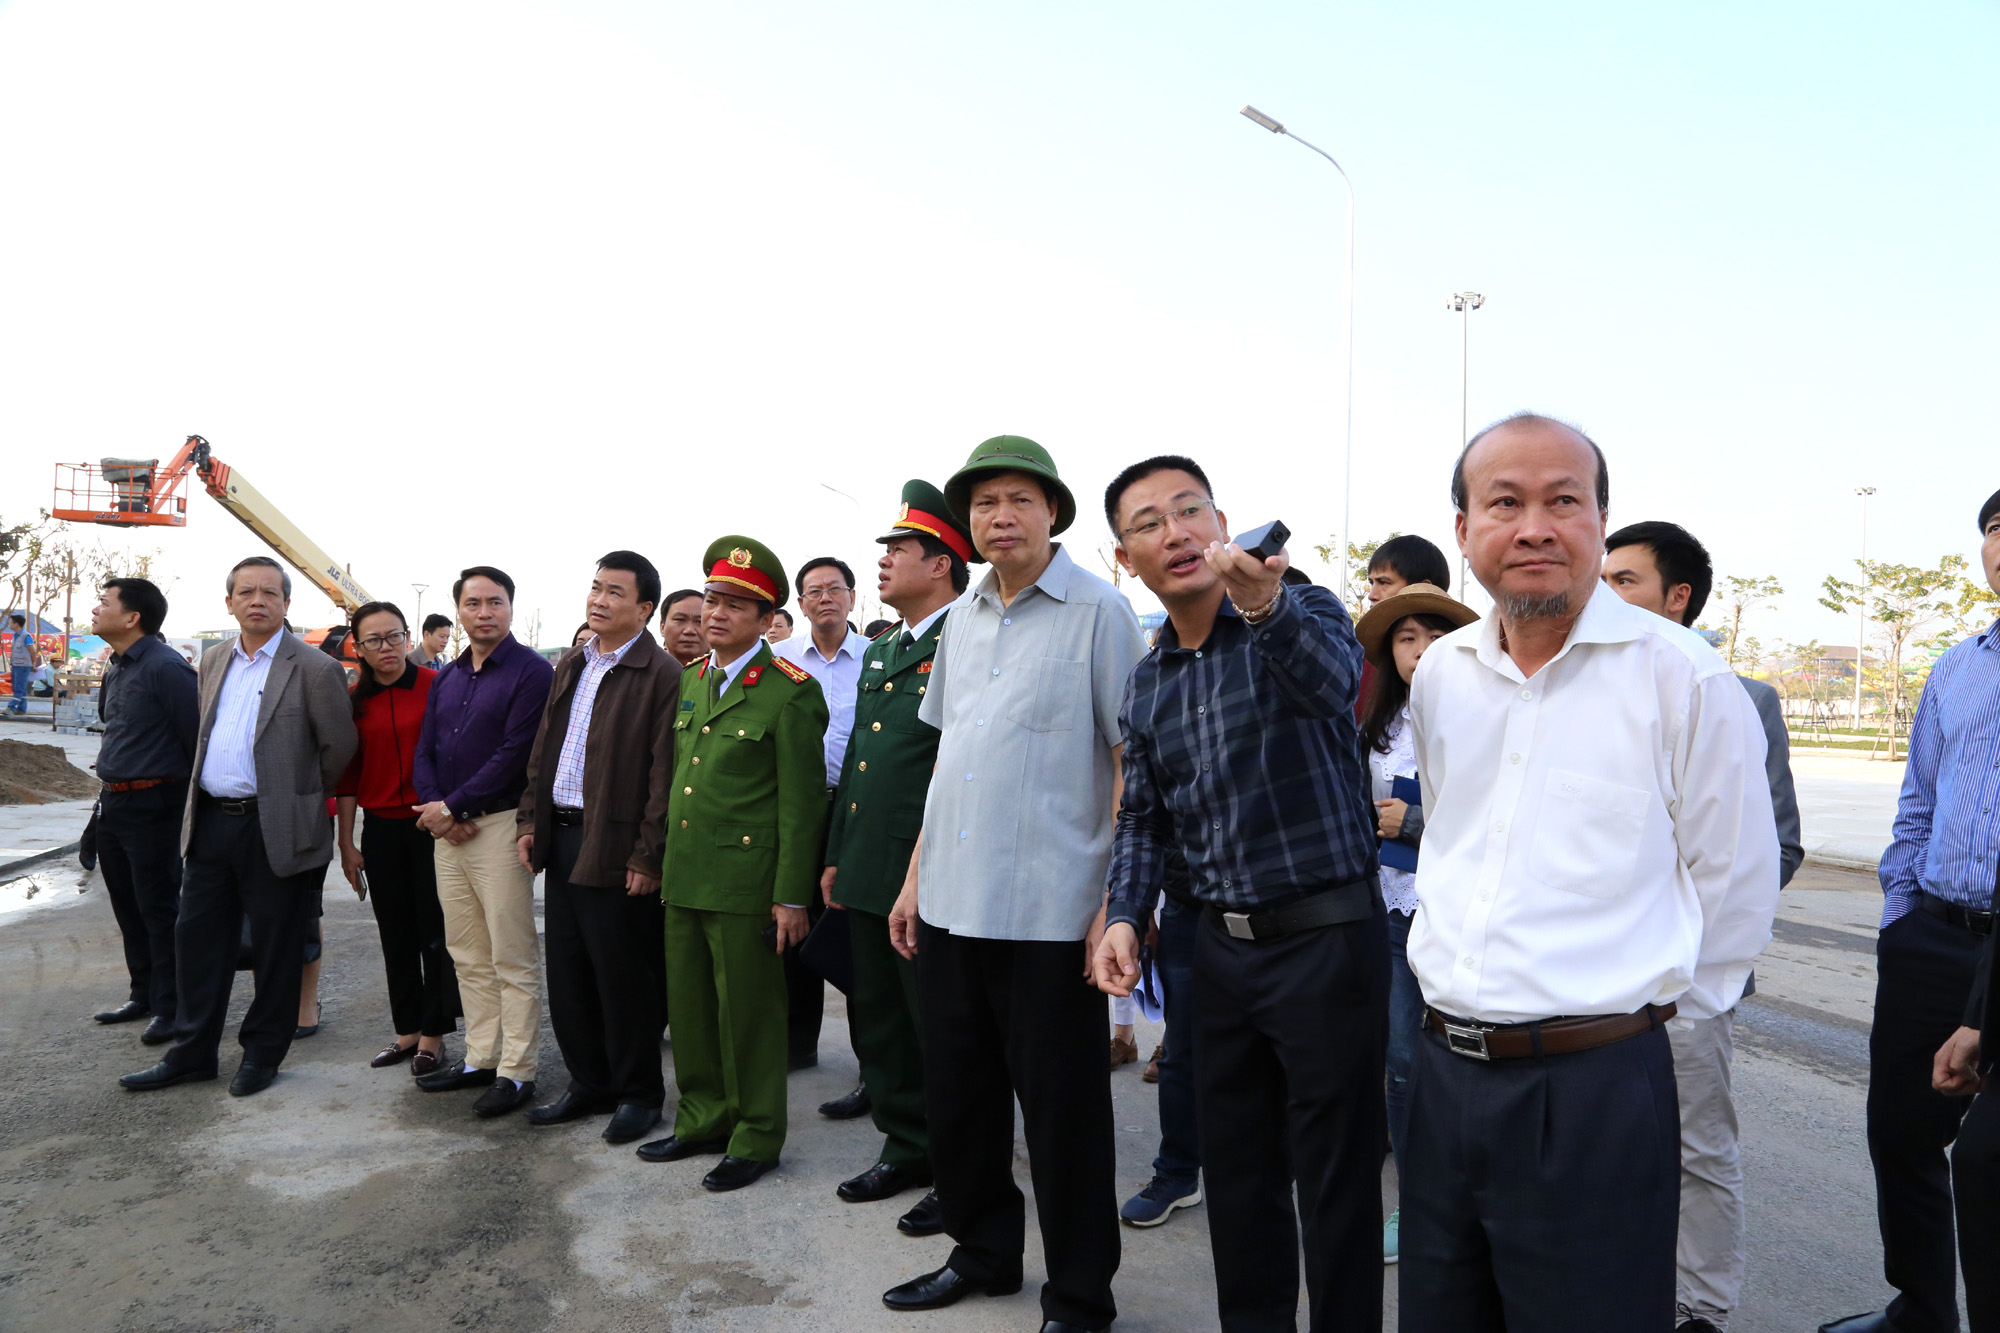 Đồng chí Nguyễn Đức Long, Phó Bí thư Tỉnh ủy, Chủ tịch UBND tỉnh, chỉ đạo công tác chuẩn bị cho lễ khánh thành Cảng tàu khách quốc tế Hòn Gai.